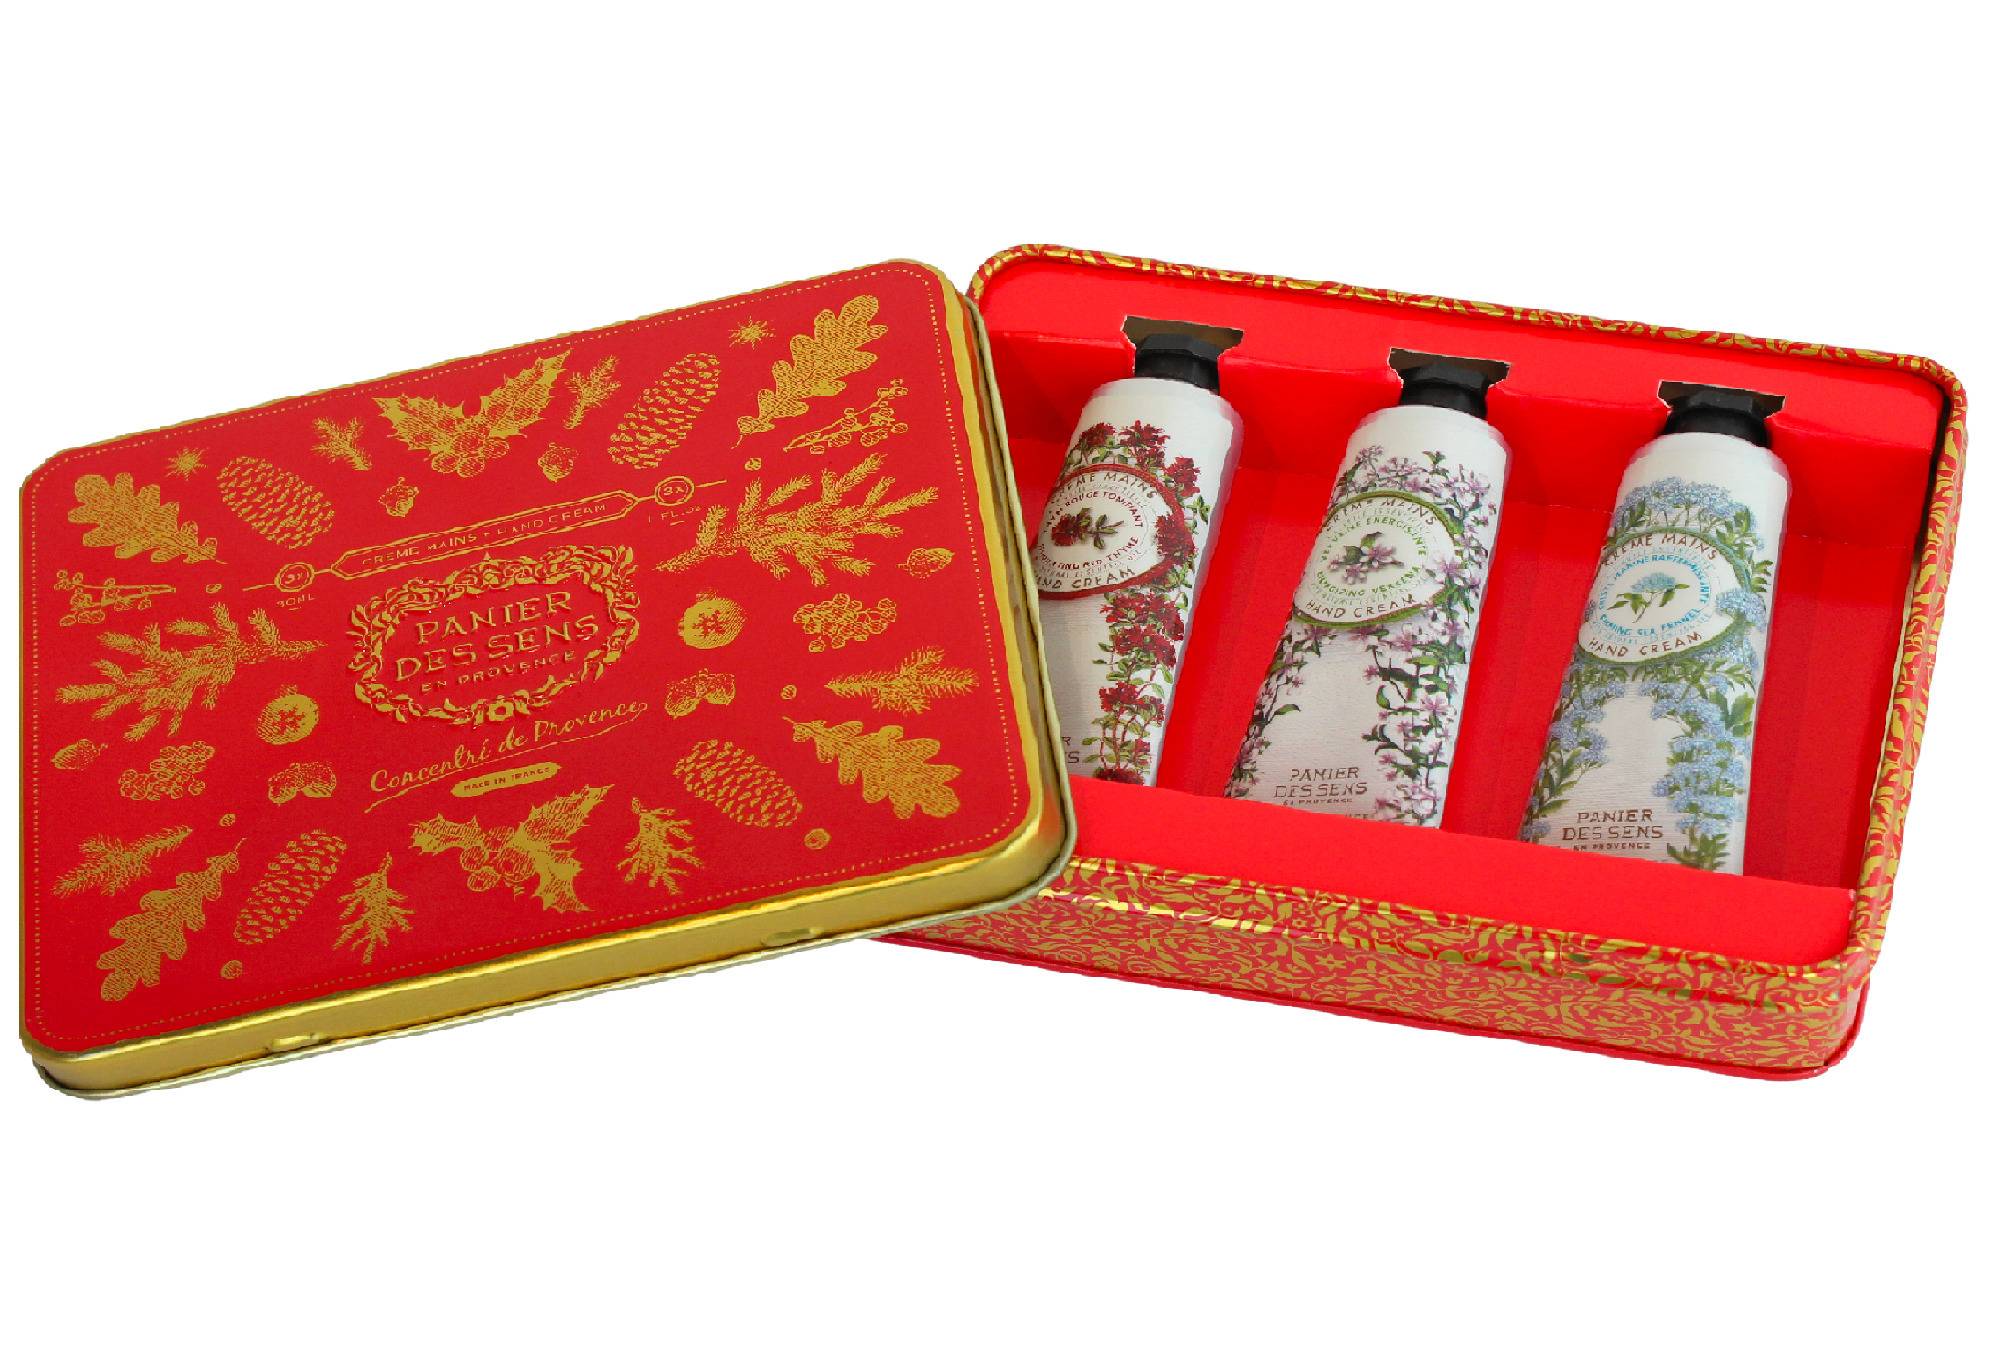 Panier des Sens Hand Cream Set (Christmas Edition)